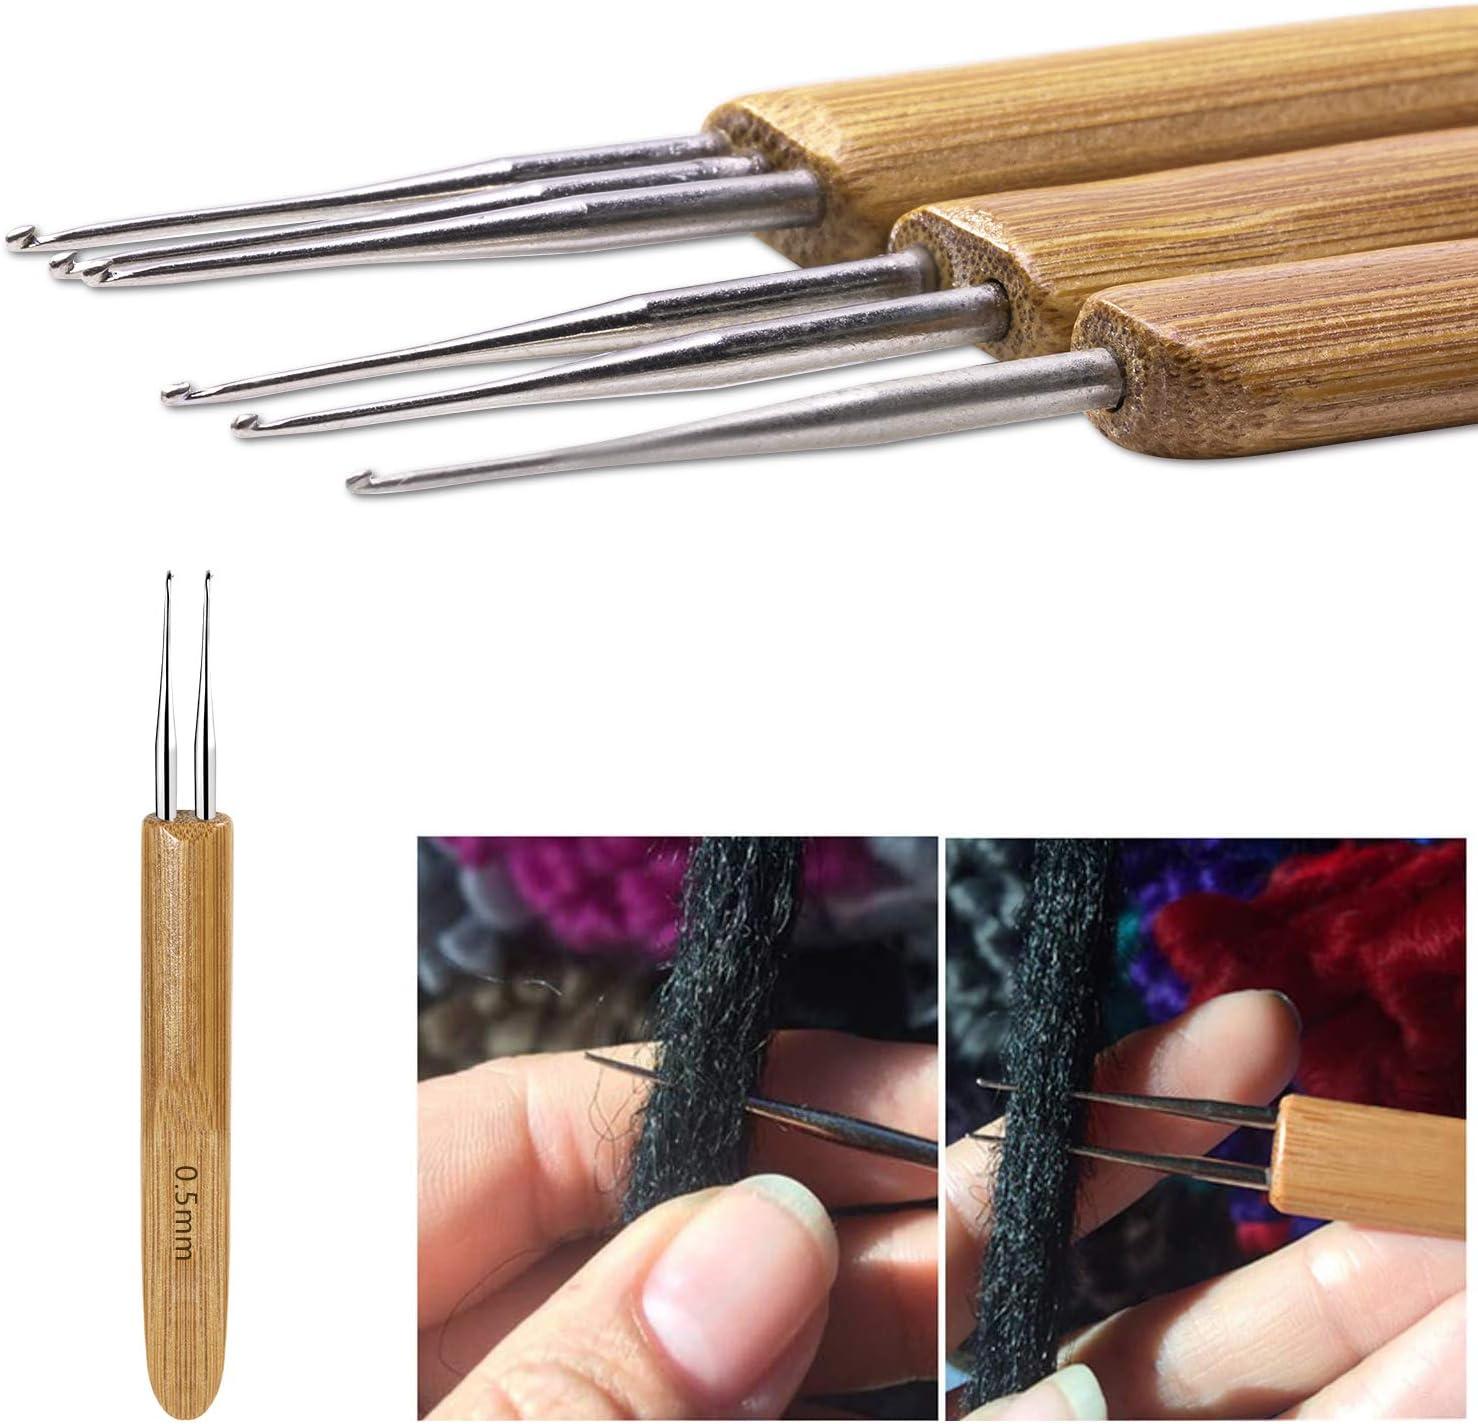  5pcs Dreadlock Crochet Needle, Stainless Steel Crochet Hair  Needle Set Dread Locking Hair Tools for Braid Locking Craft and Braiding  Crochet Craft (0.5mm, 0.75mm)